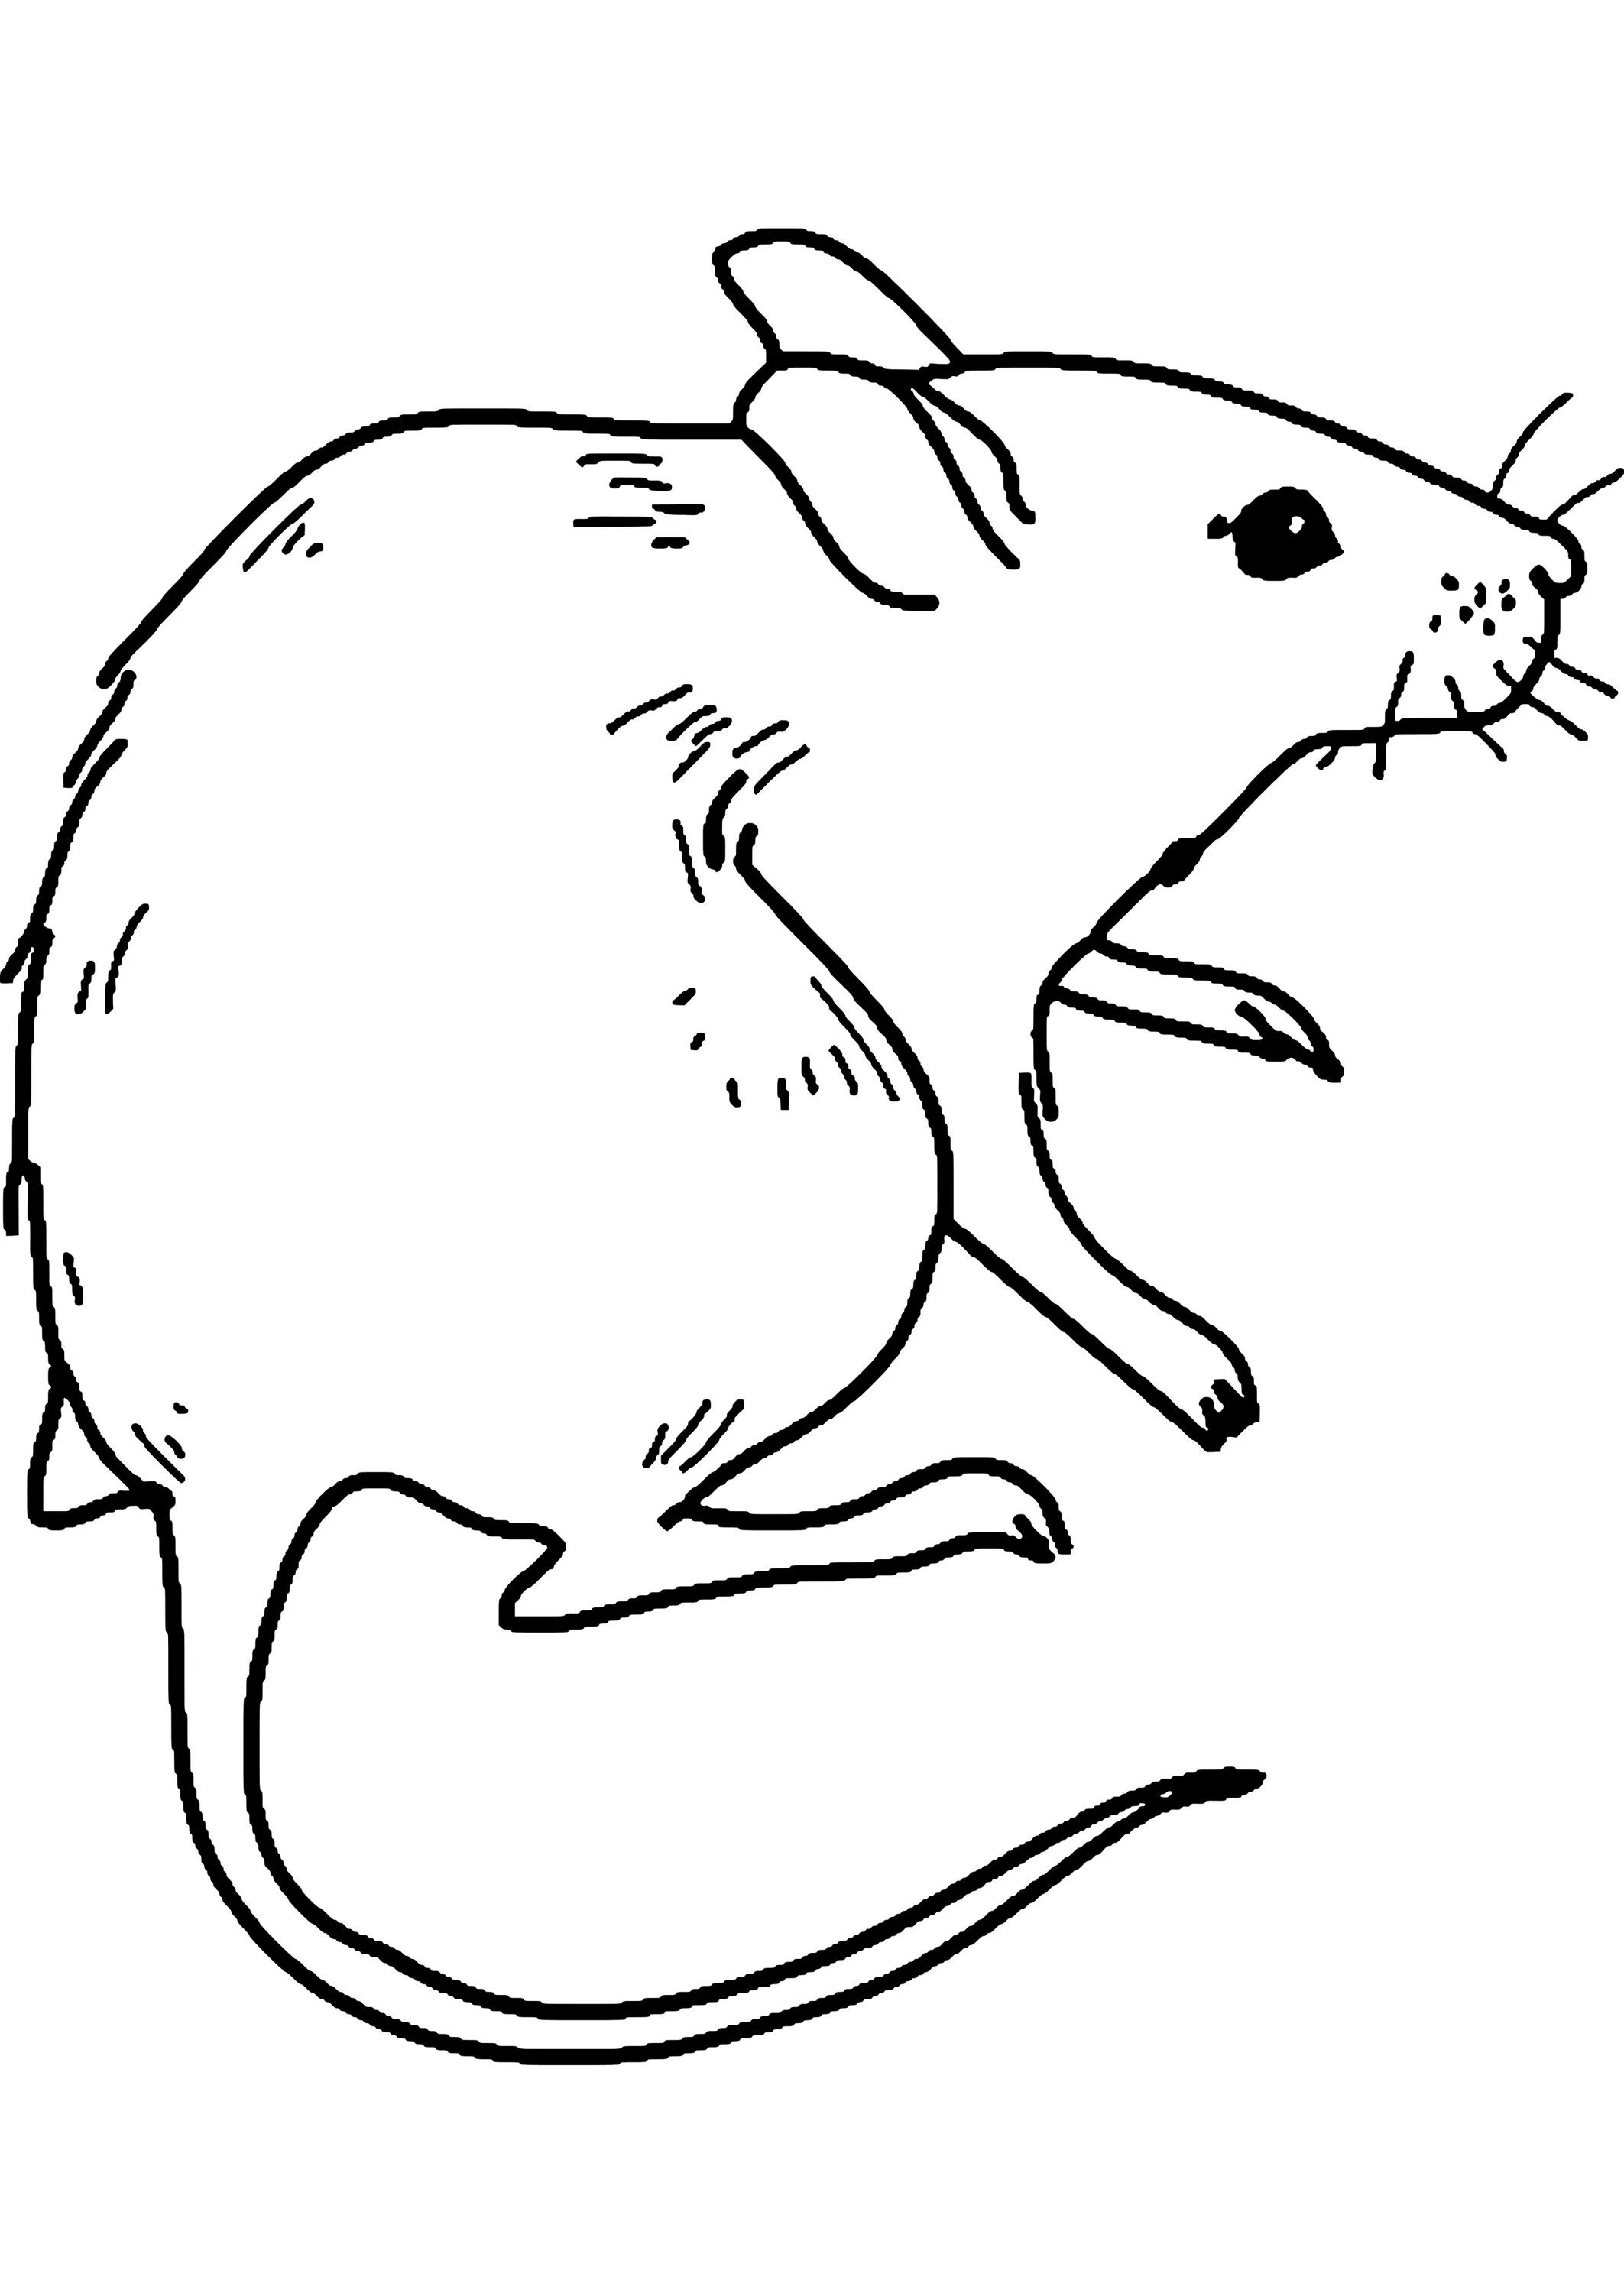 Причудливый рисунок мыши